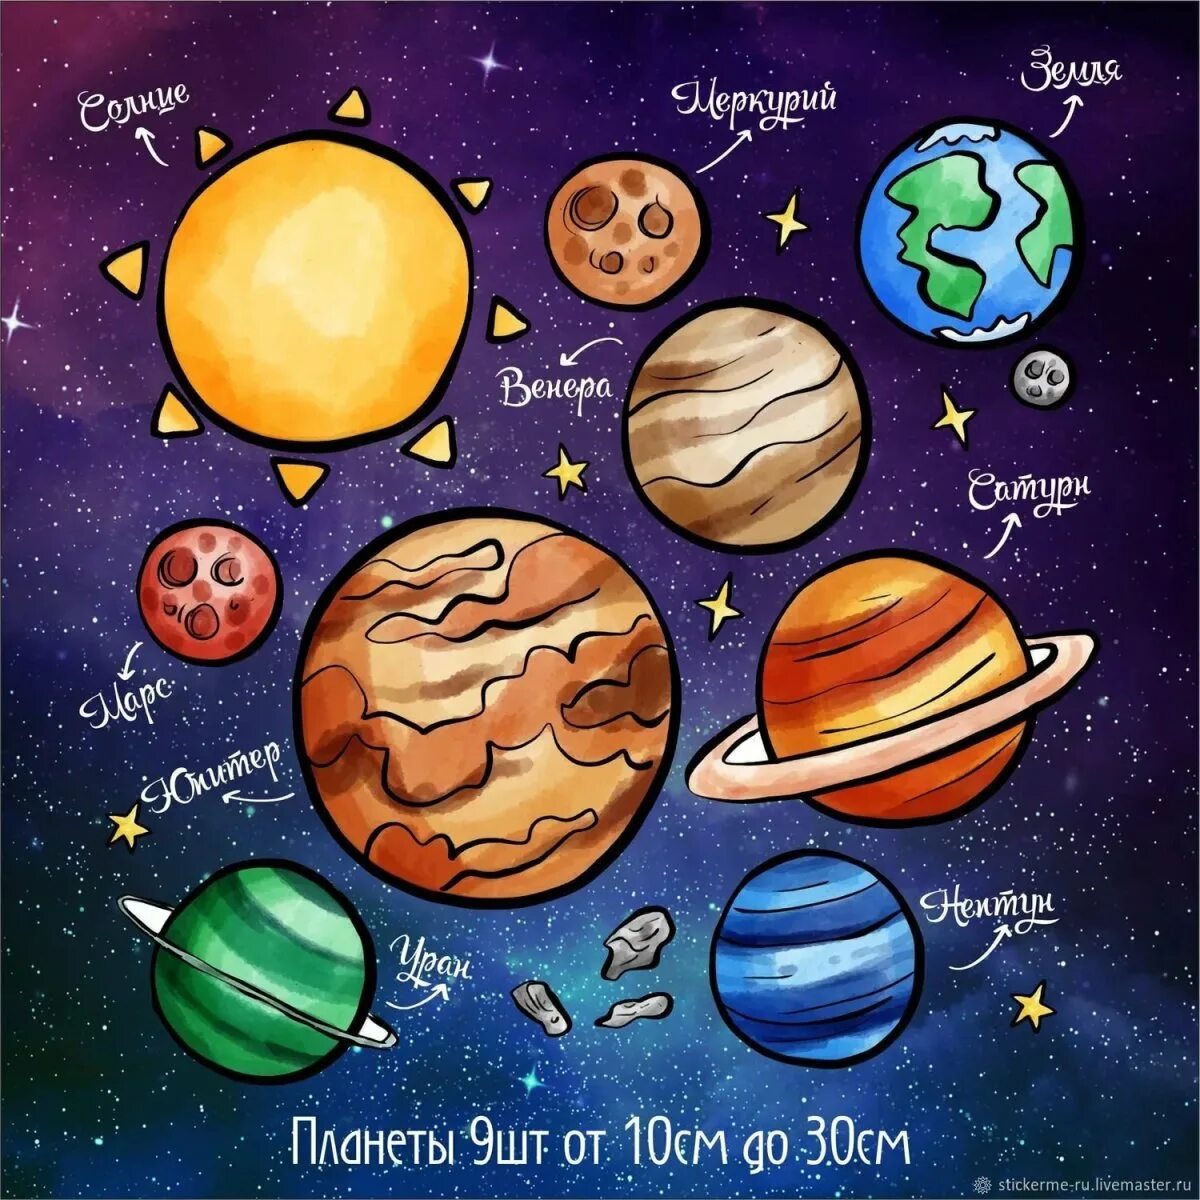 Рисунок планетов. Планеты солнечной системы для детей. Космос планеты для детей. Рисунки планет. Название планет для детей.